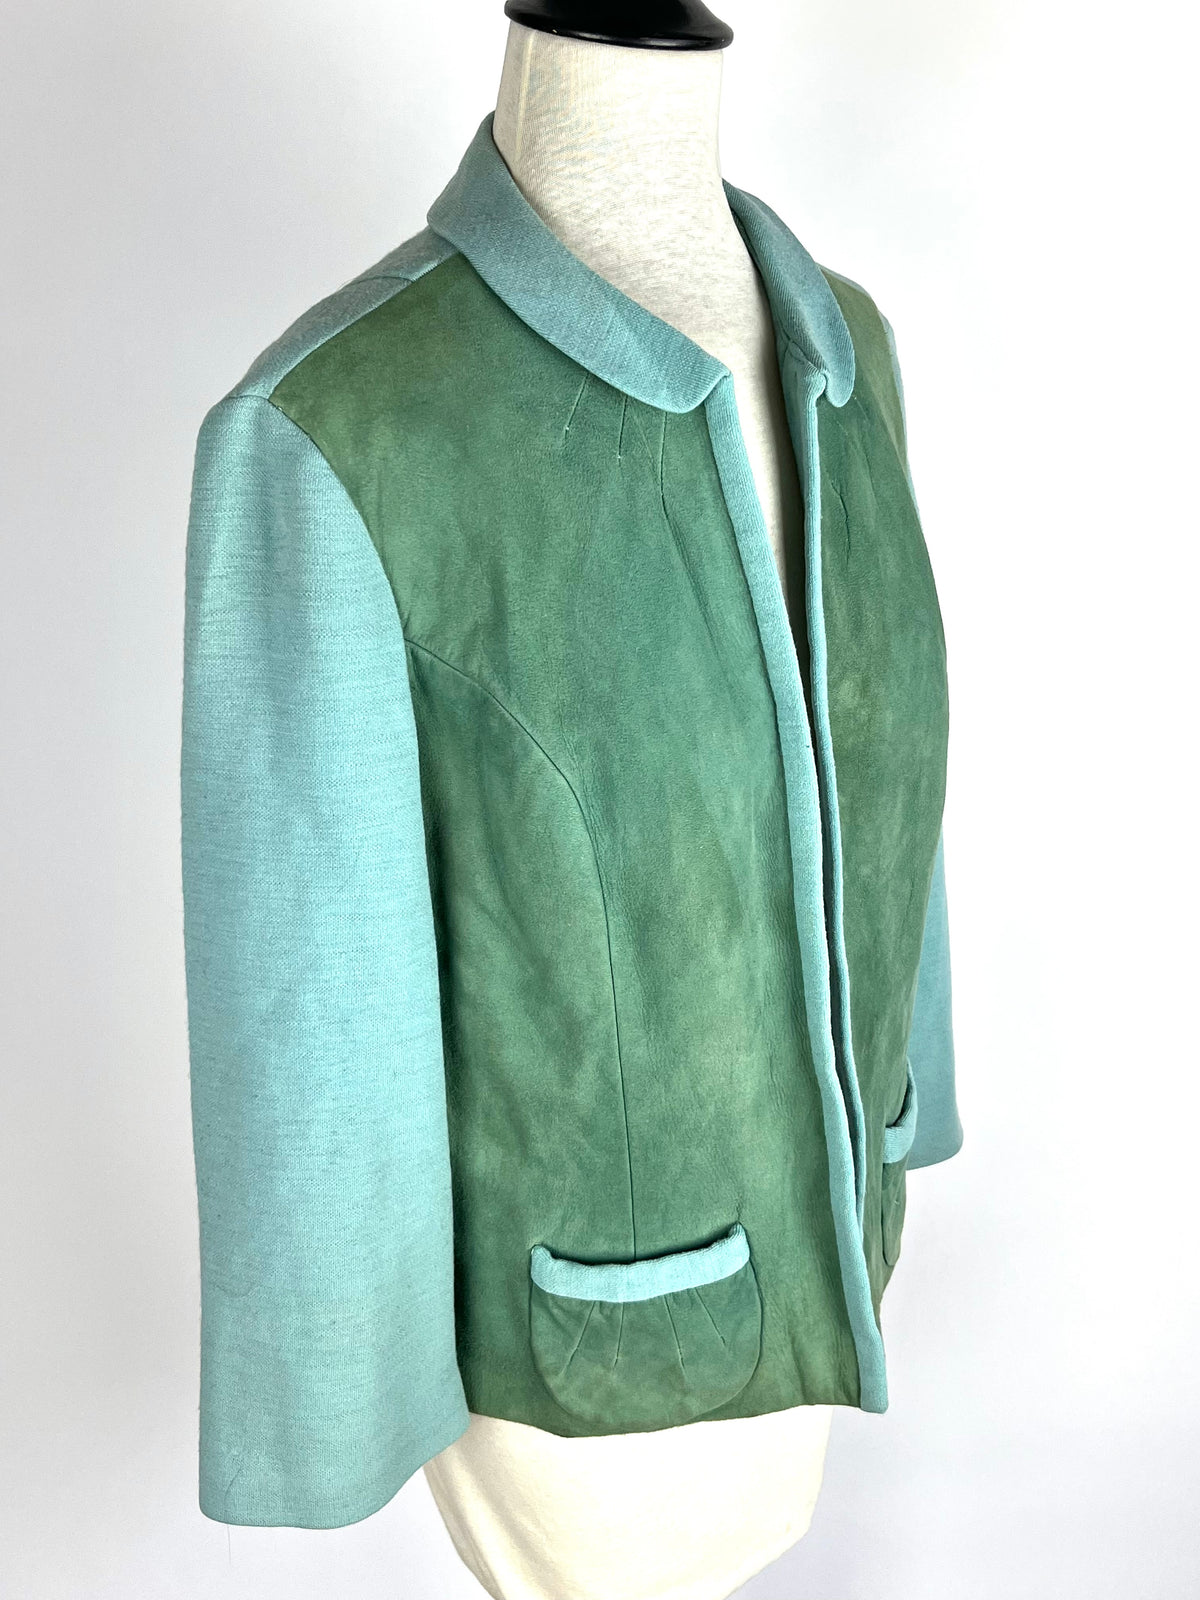 Vintage Wool and Suede Jacket